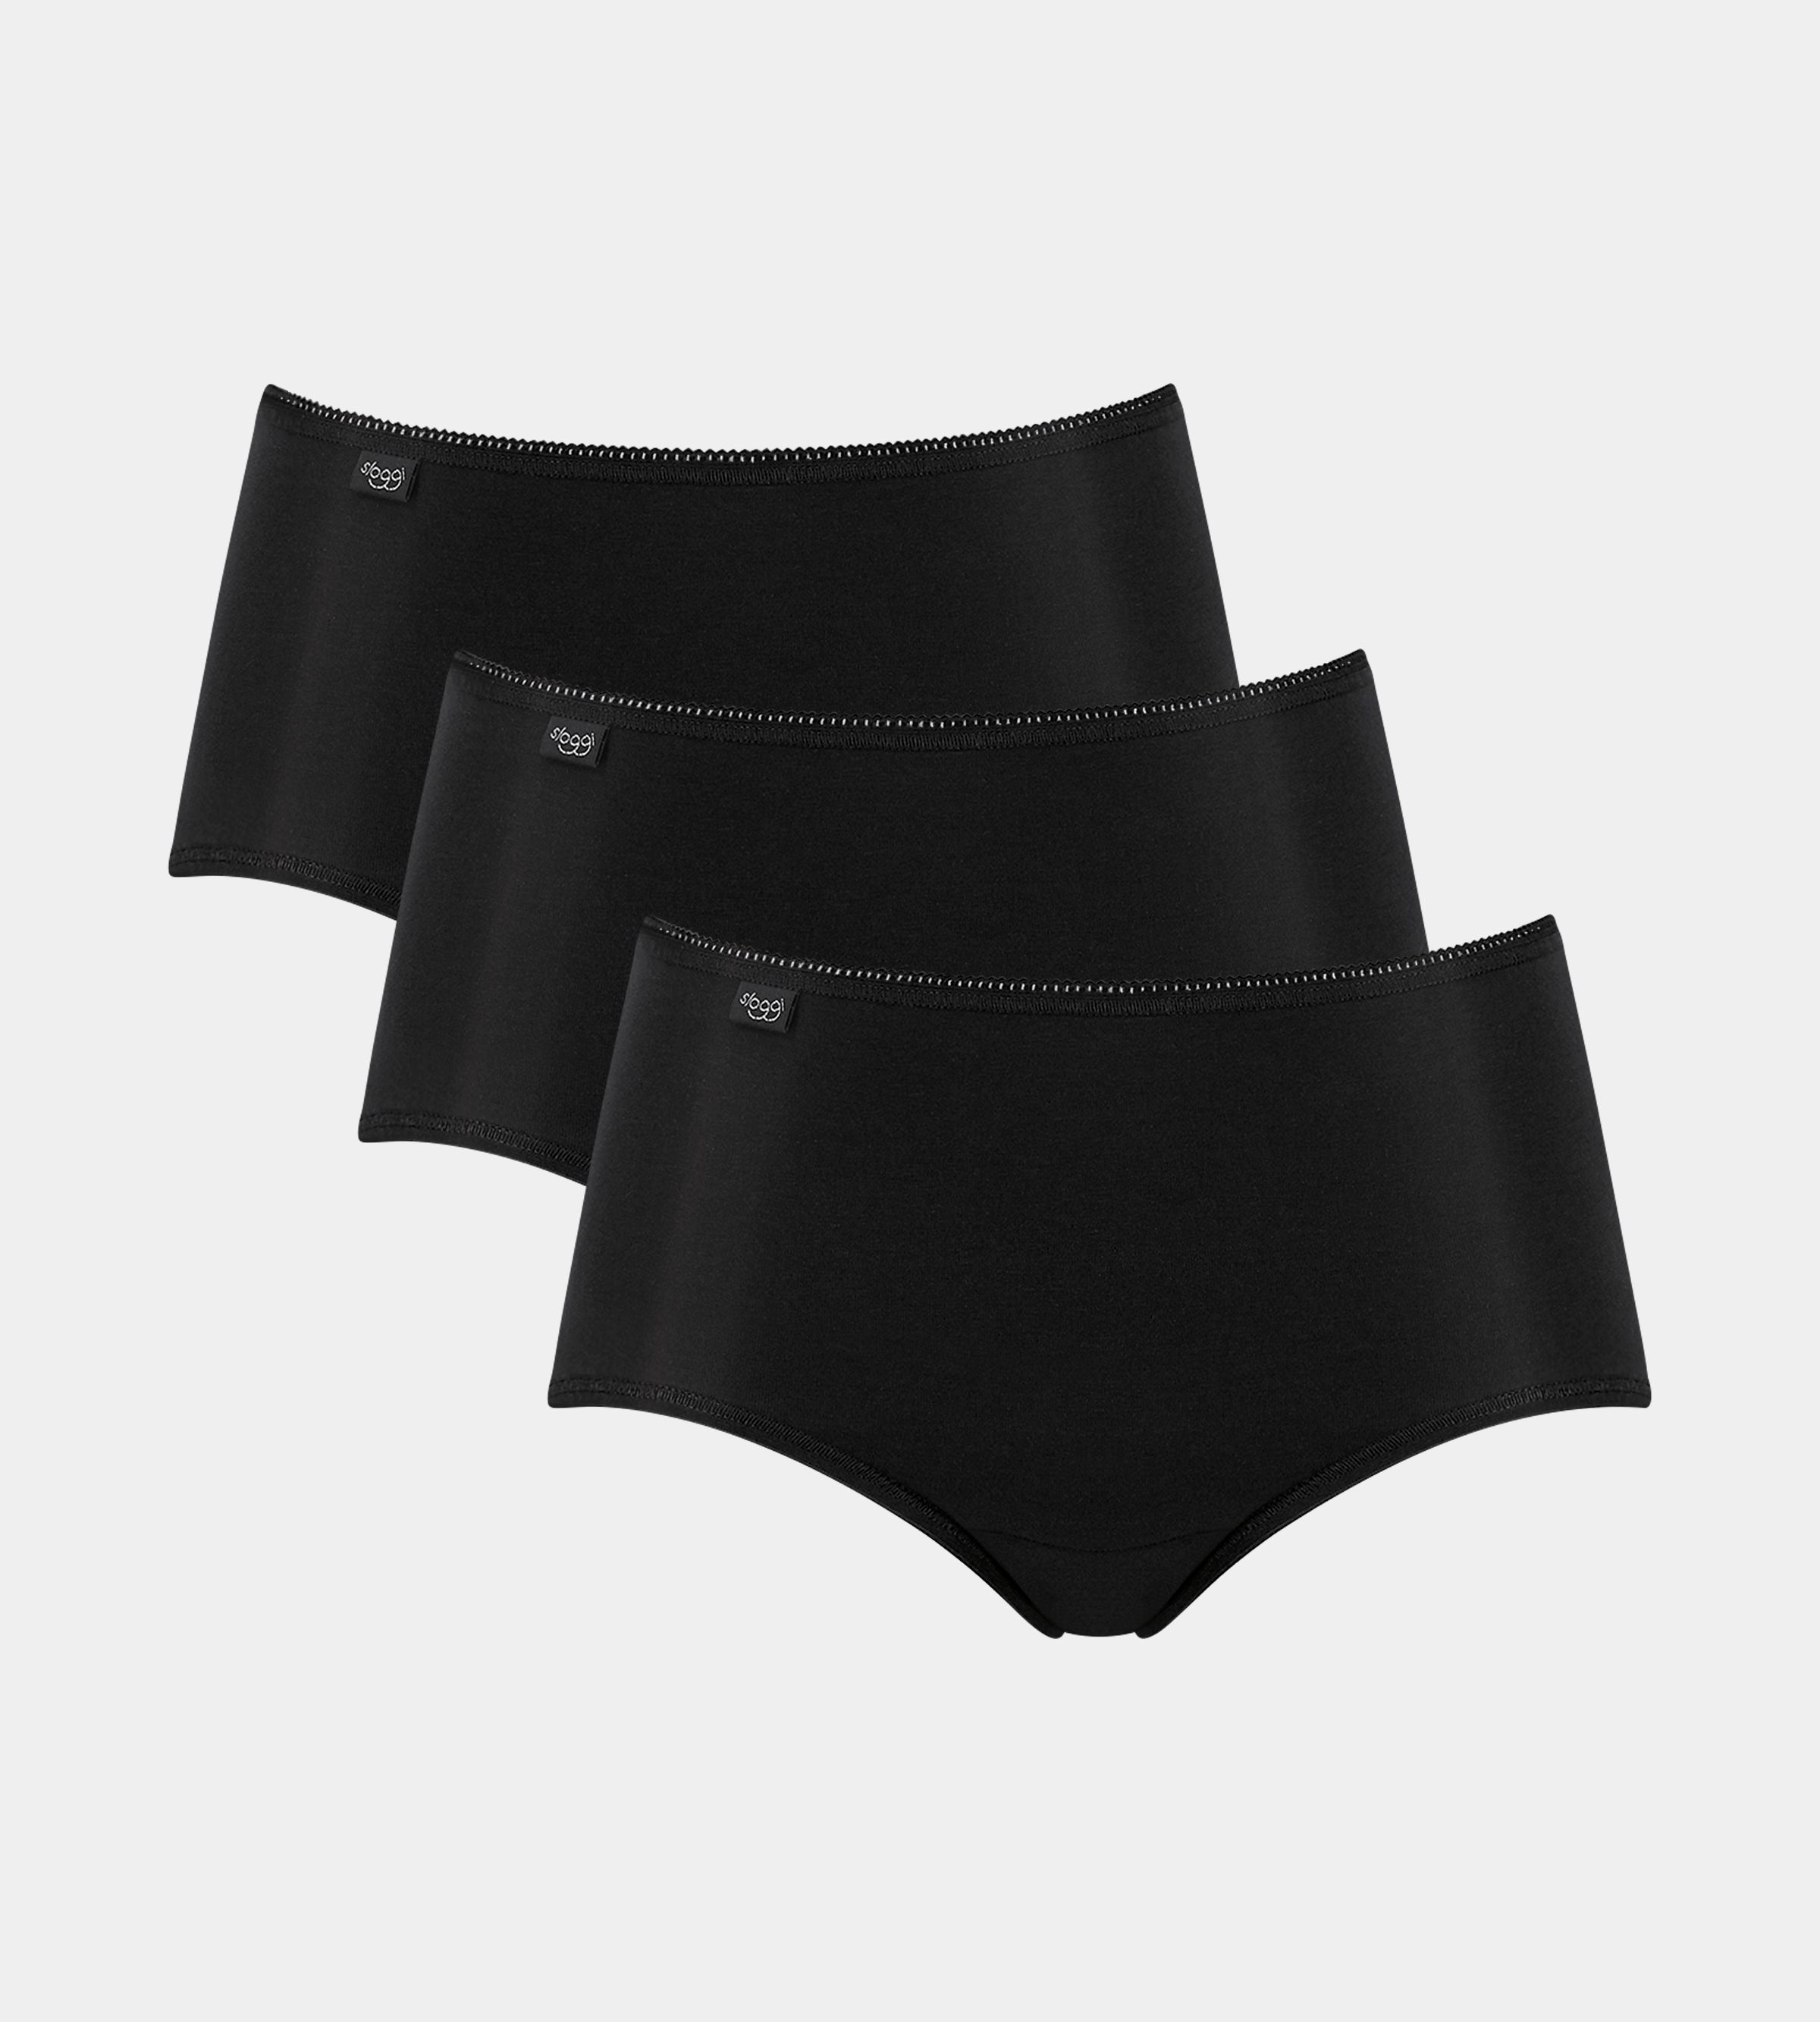 sloggi underwear - comfortable underwear for every day